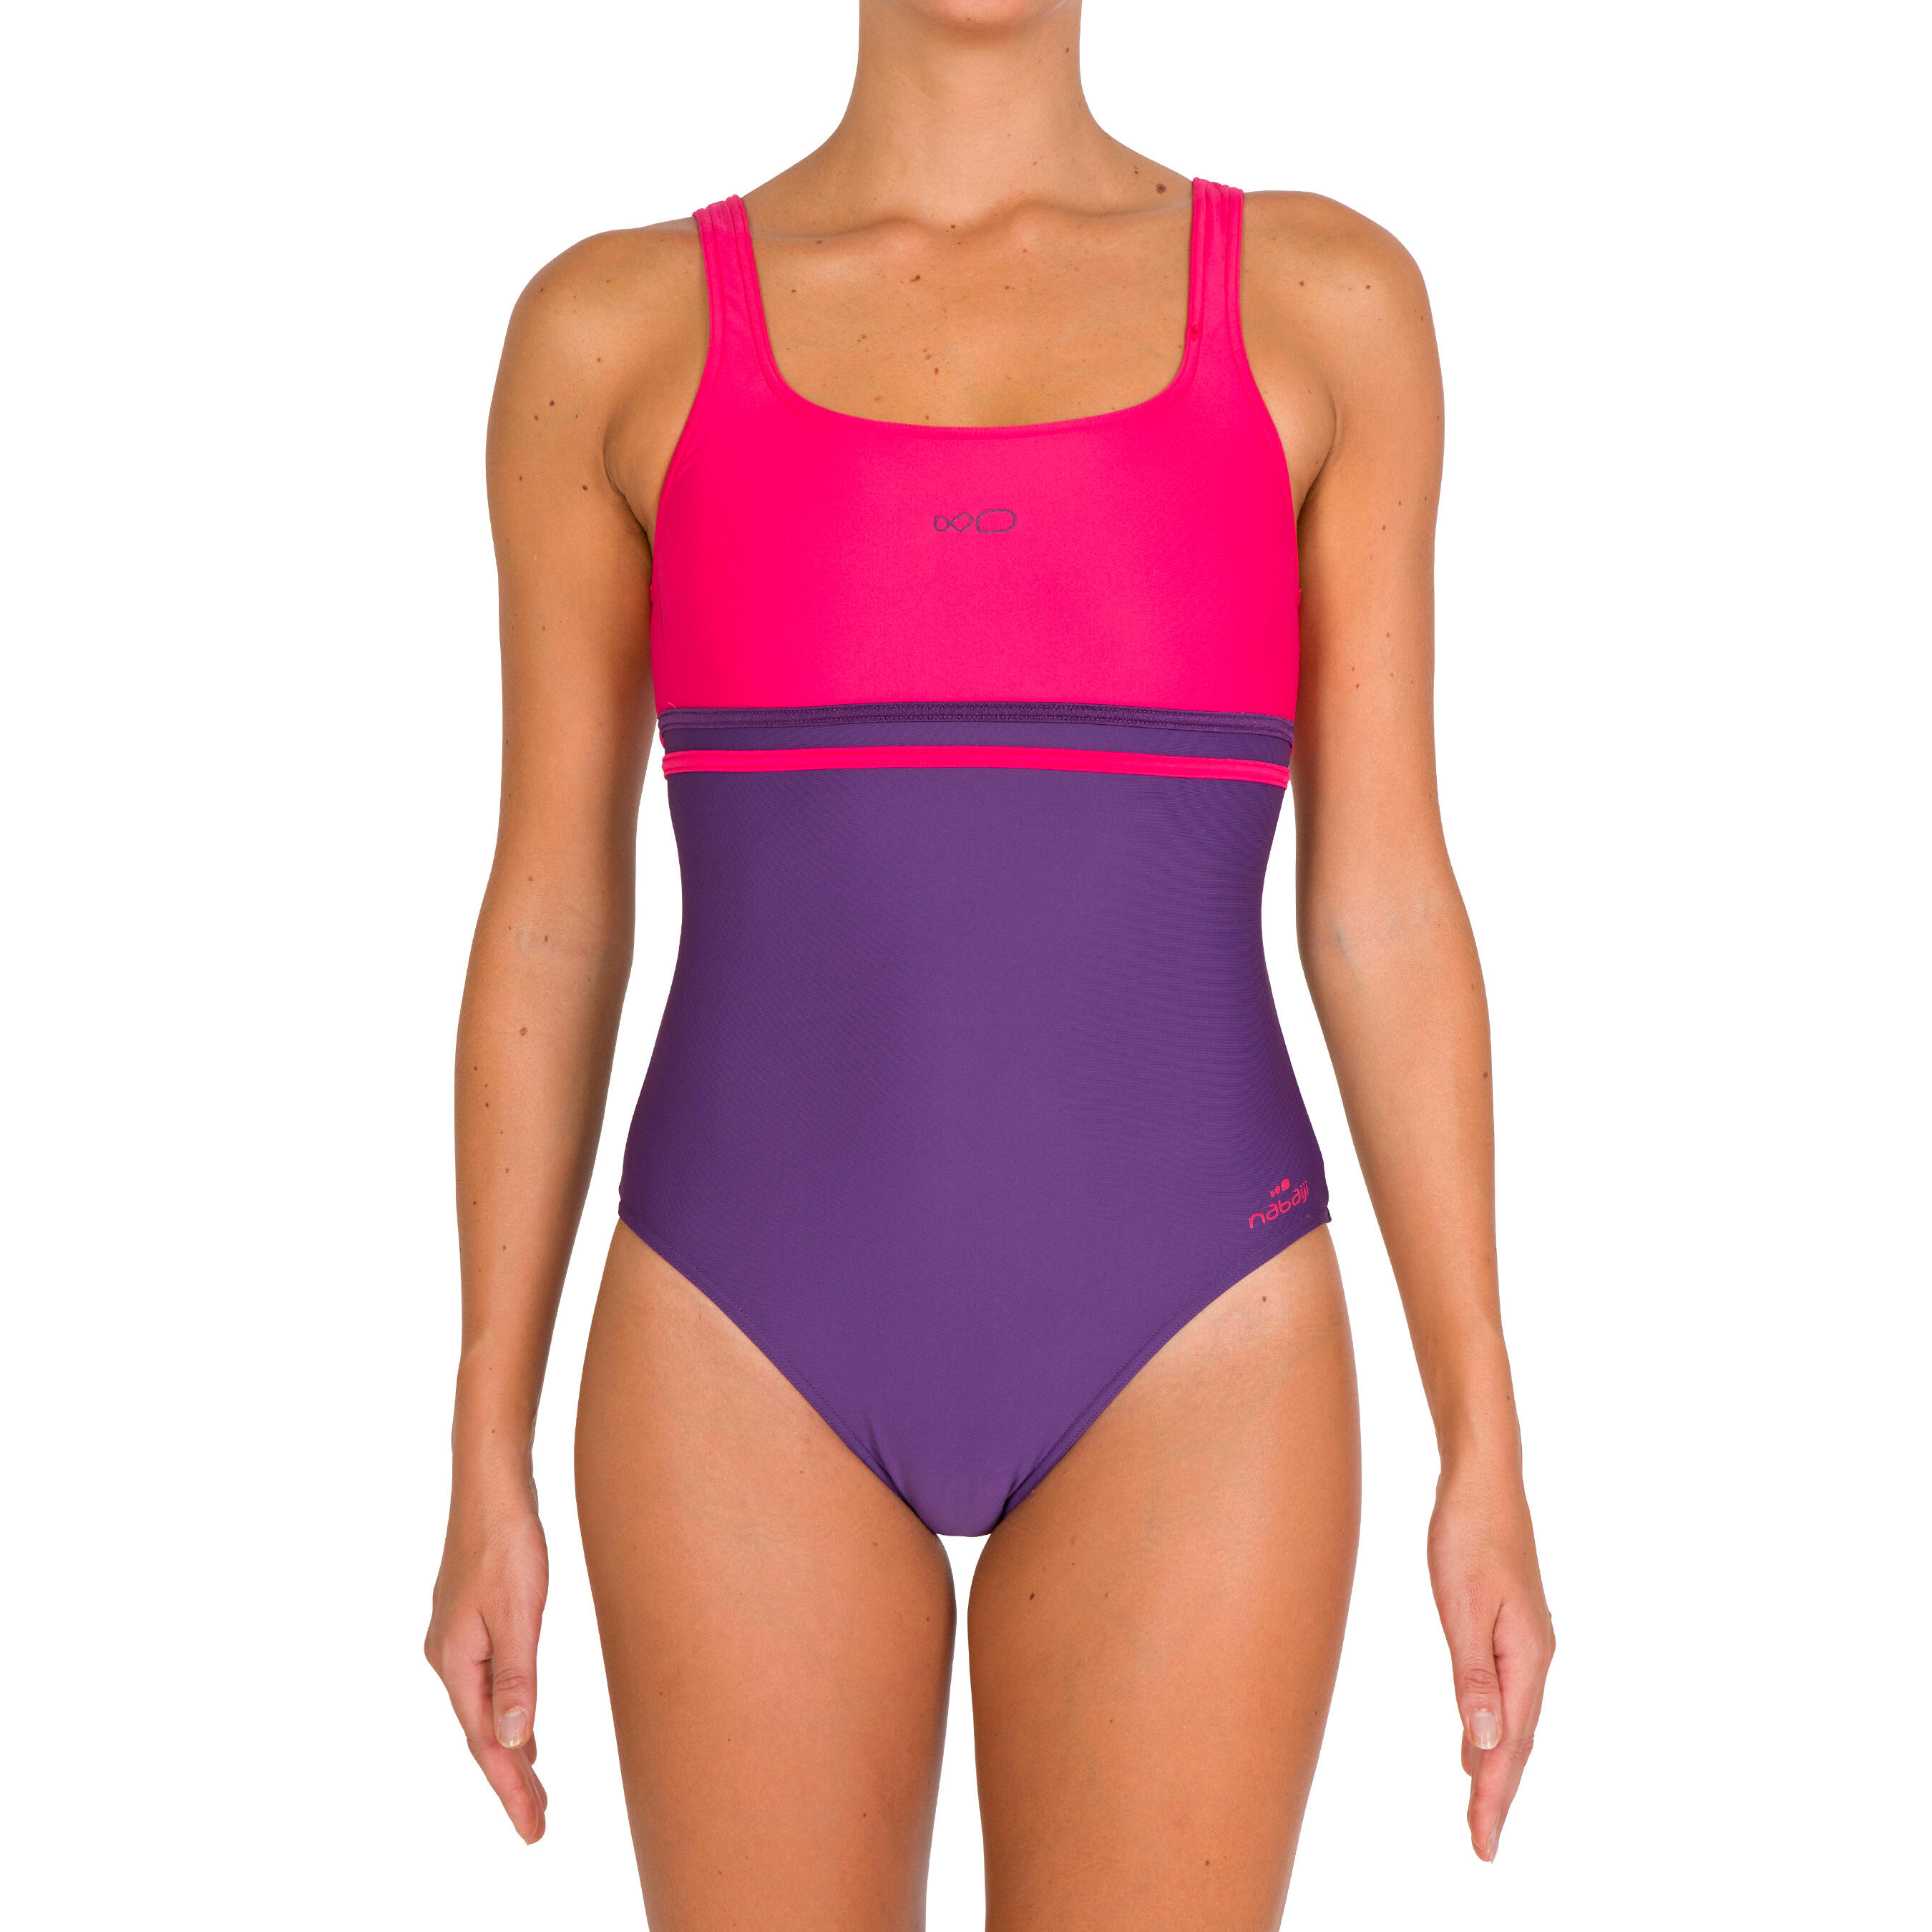 Loran women's one-piece swimsuit - Purple Pink 4/11